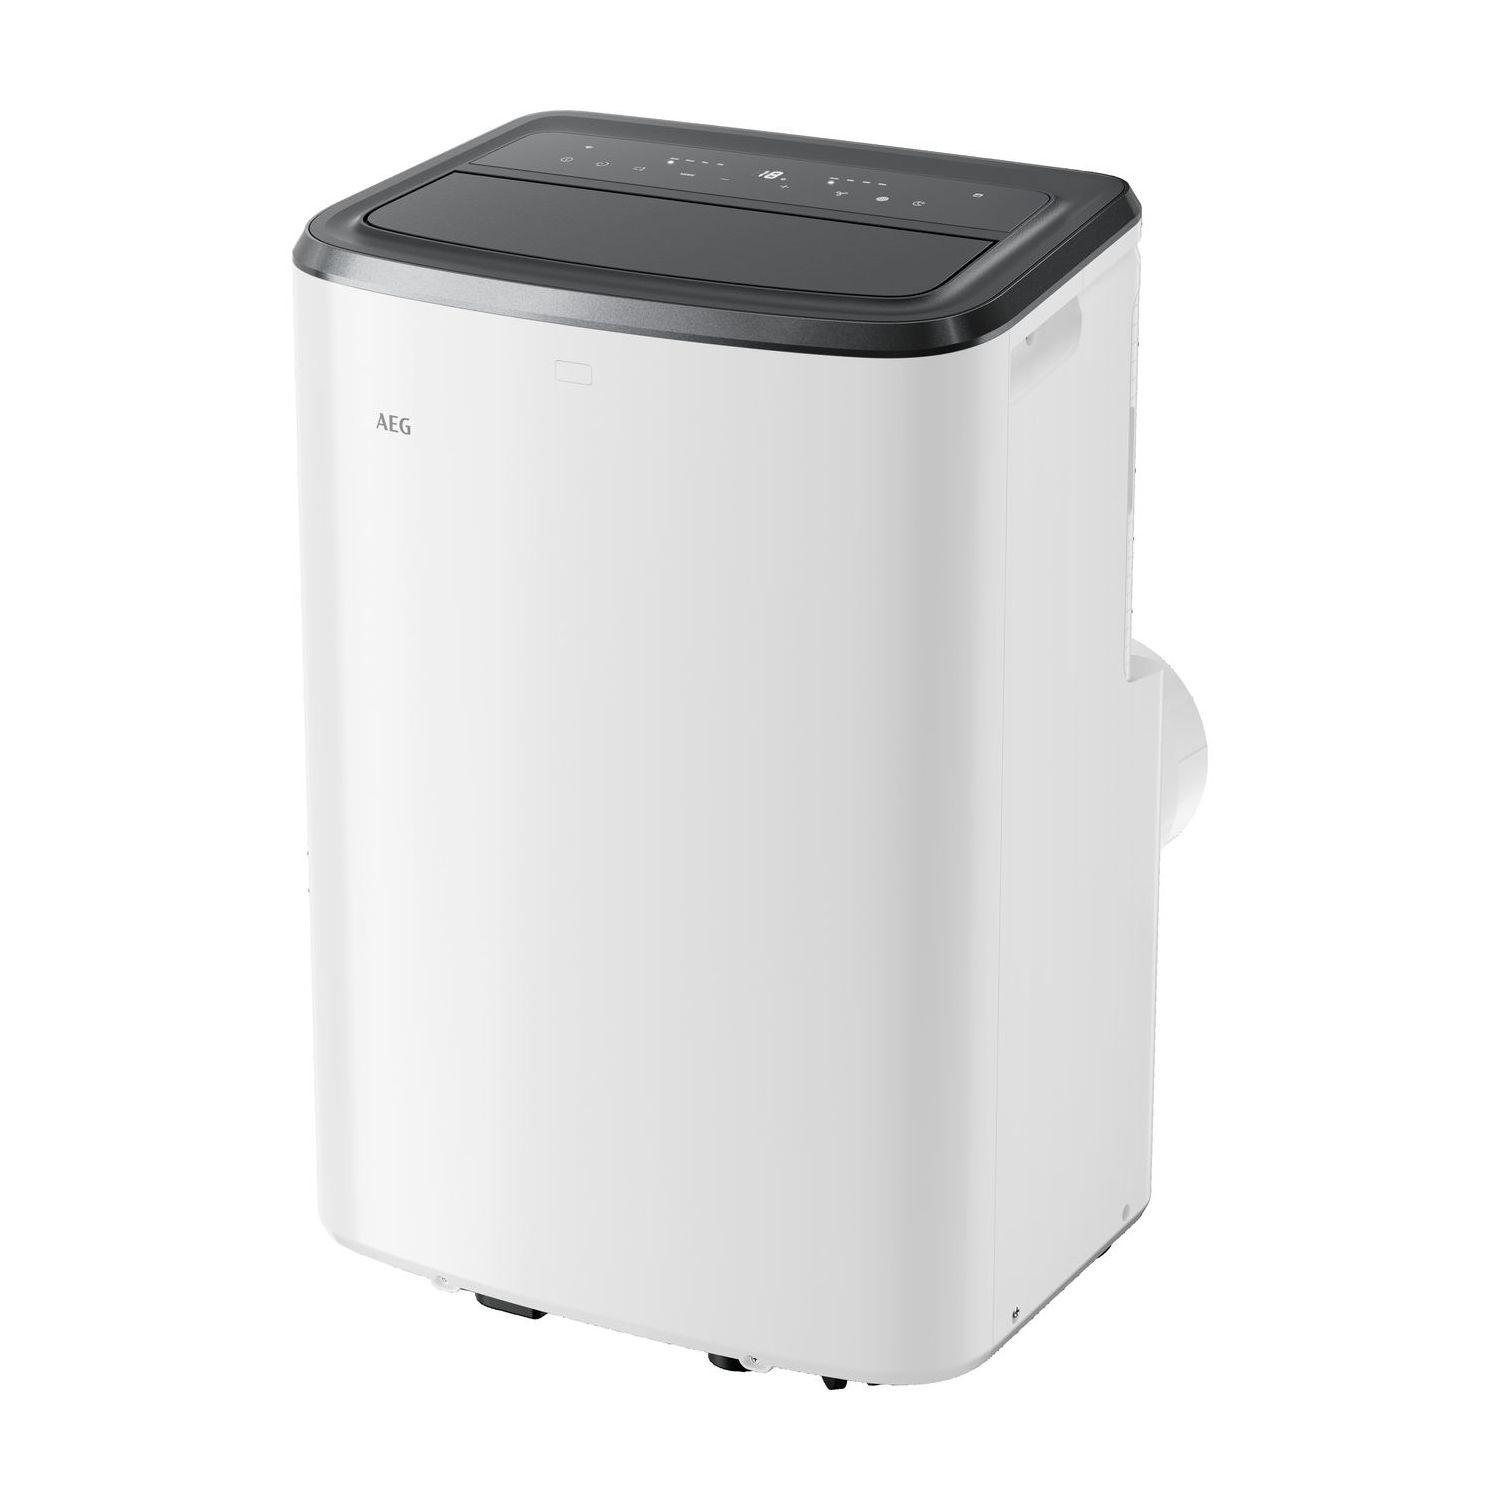 AEG 9000 BTU Portable Air Conditioner - ChillFl